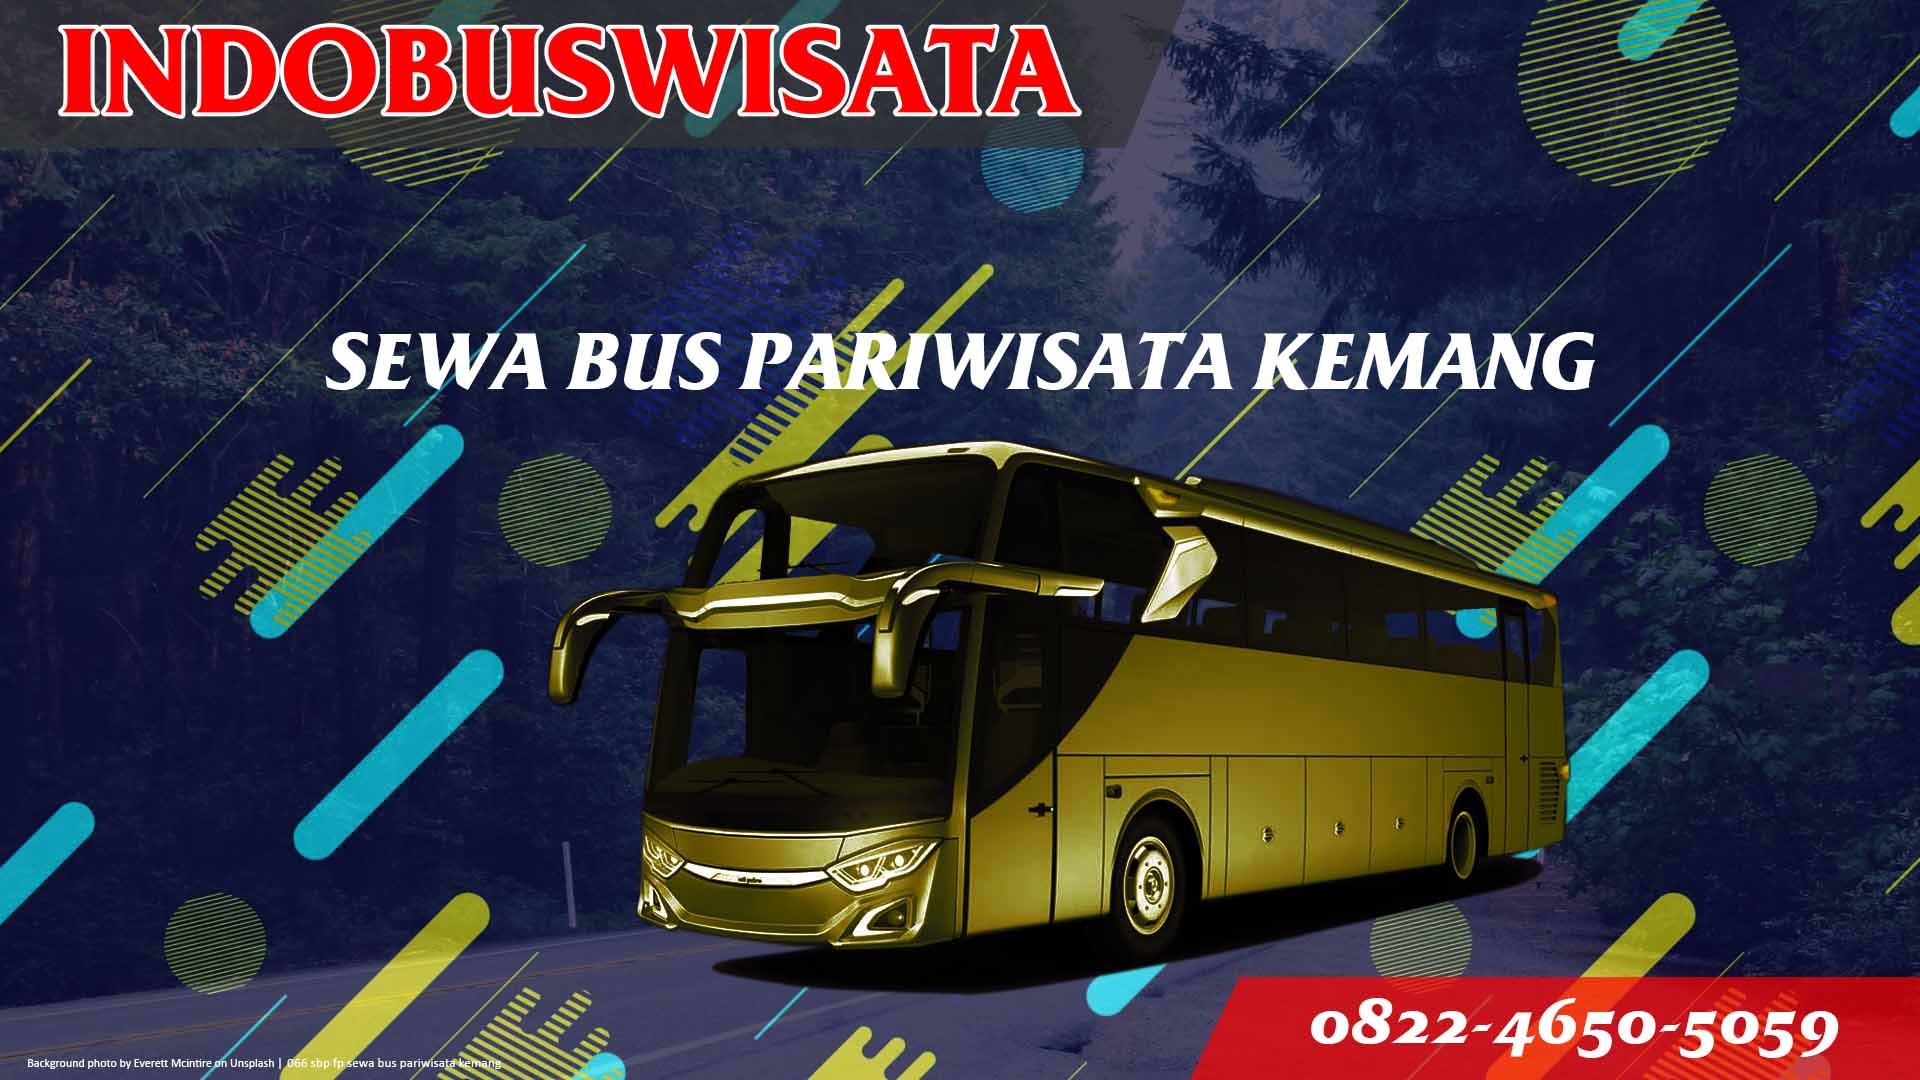 066 Sbp Fp Sewa Bus Pariwisata Kemang Indobuswisata